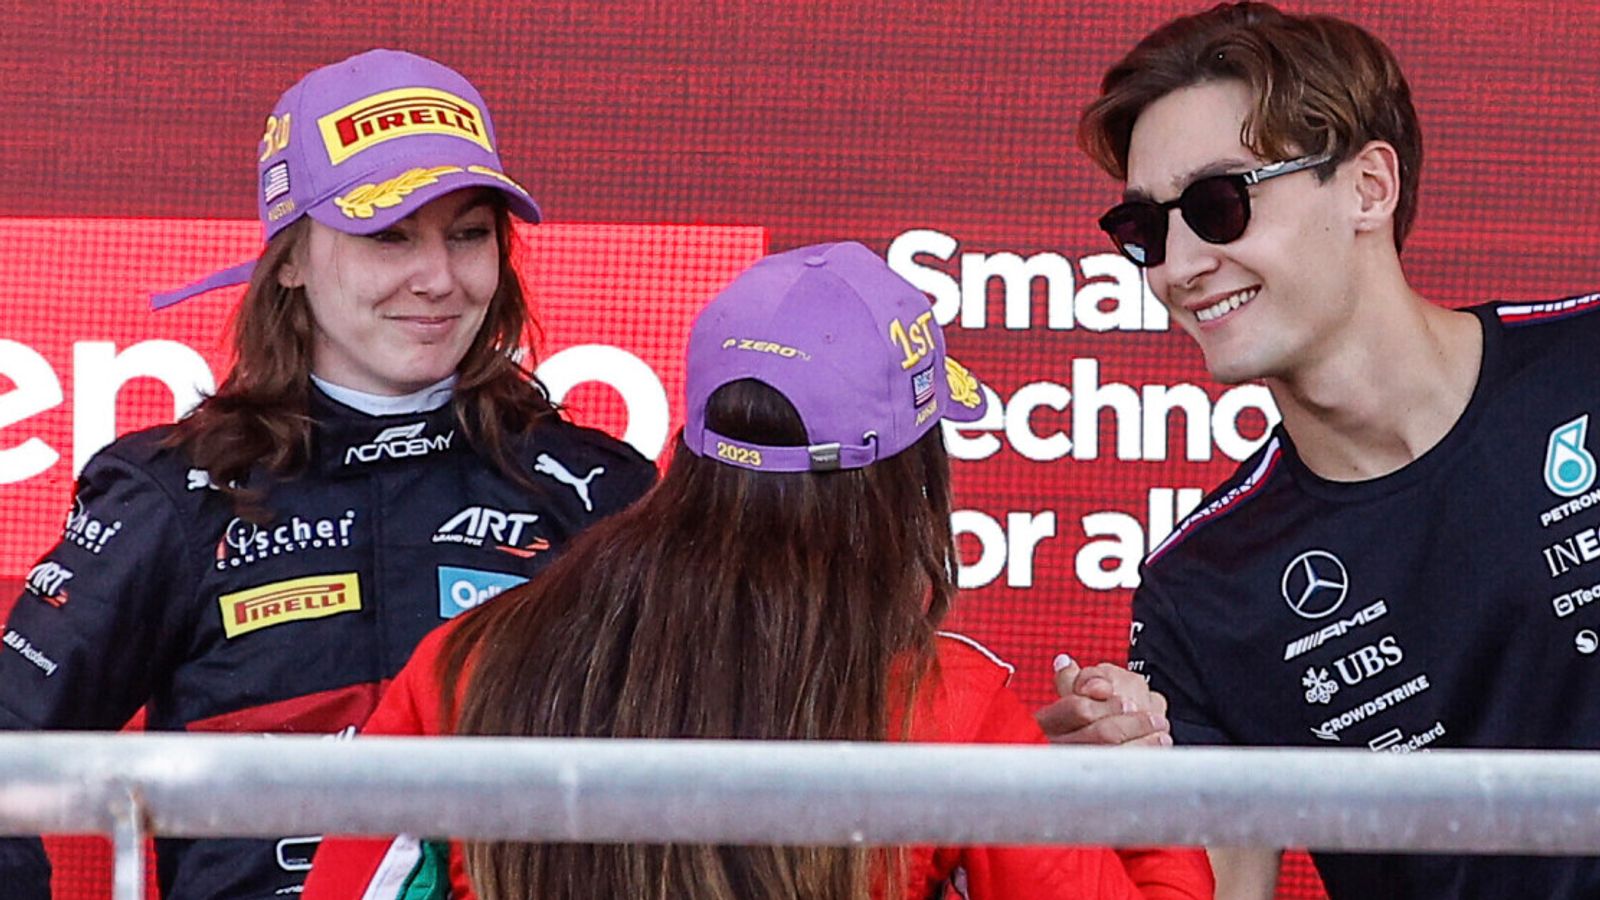 Academia F1: La participación de los equipos de F1 en series exclusivamente femeninas debe ir más allá de la marca, dice Naomi Schiff |  Noticias F1